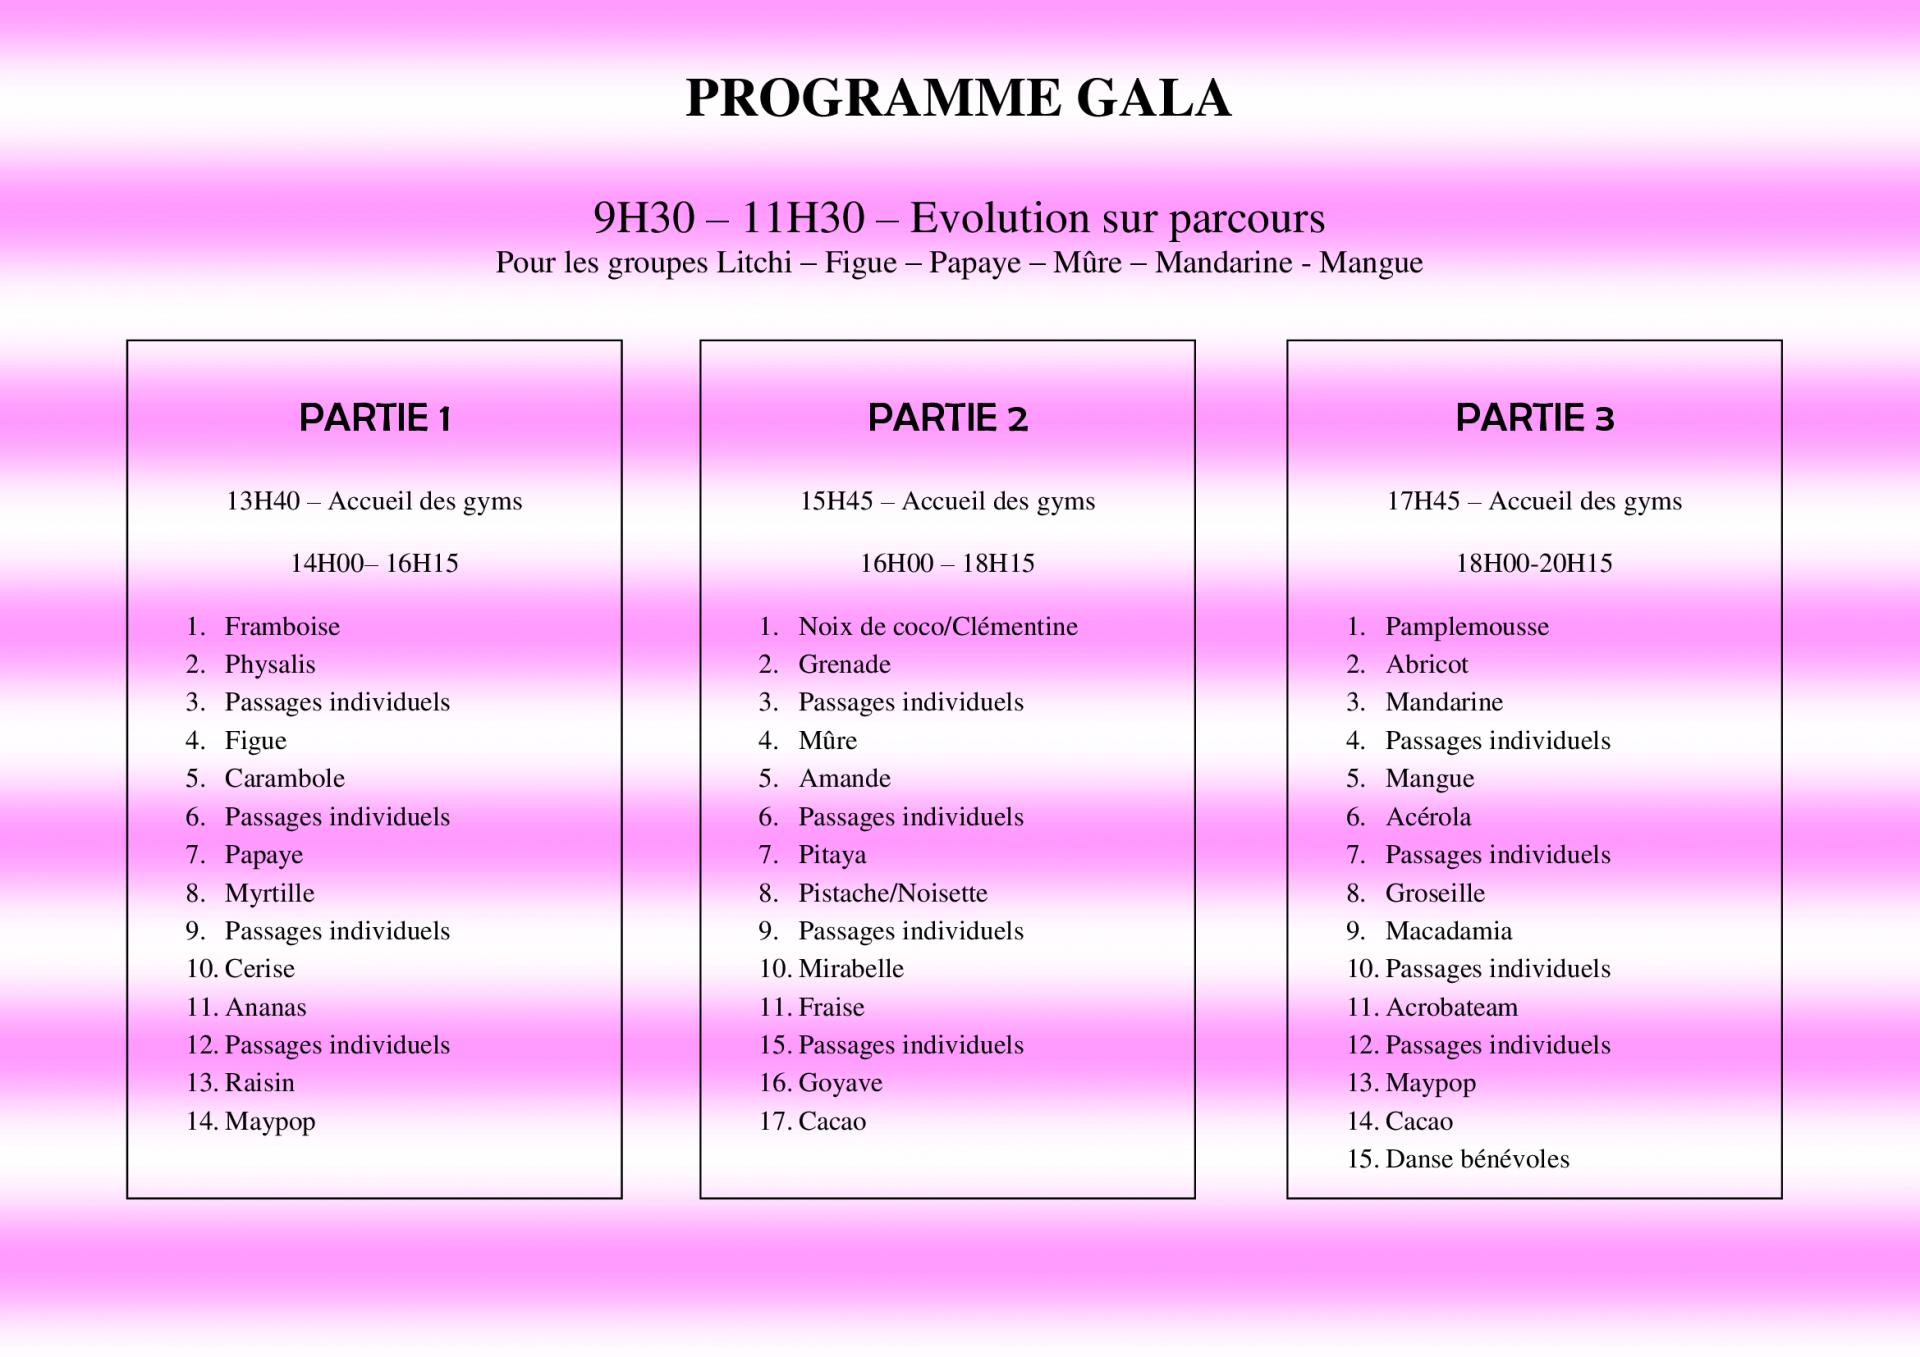 Programme gala